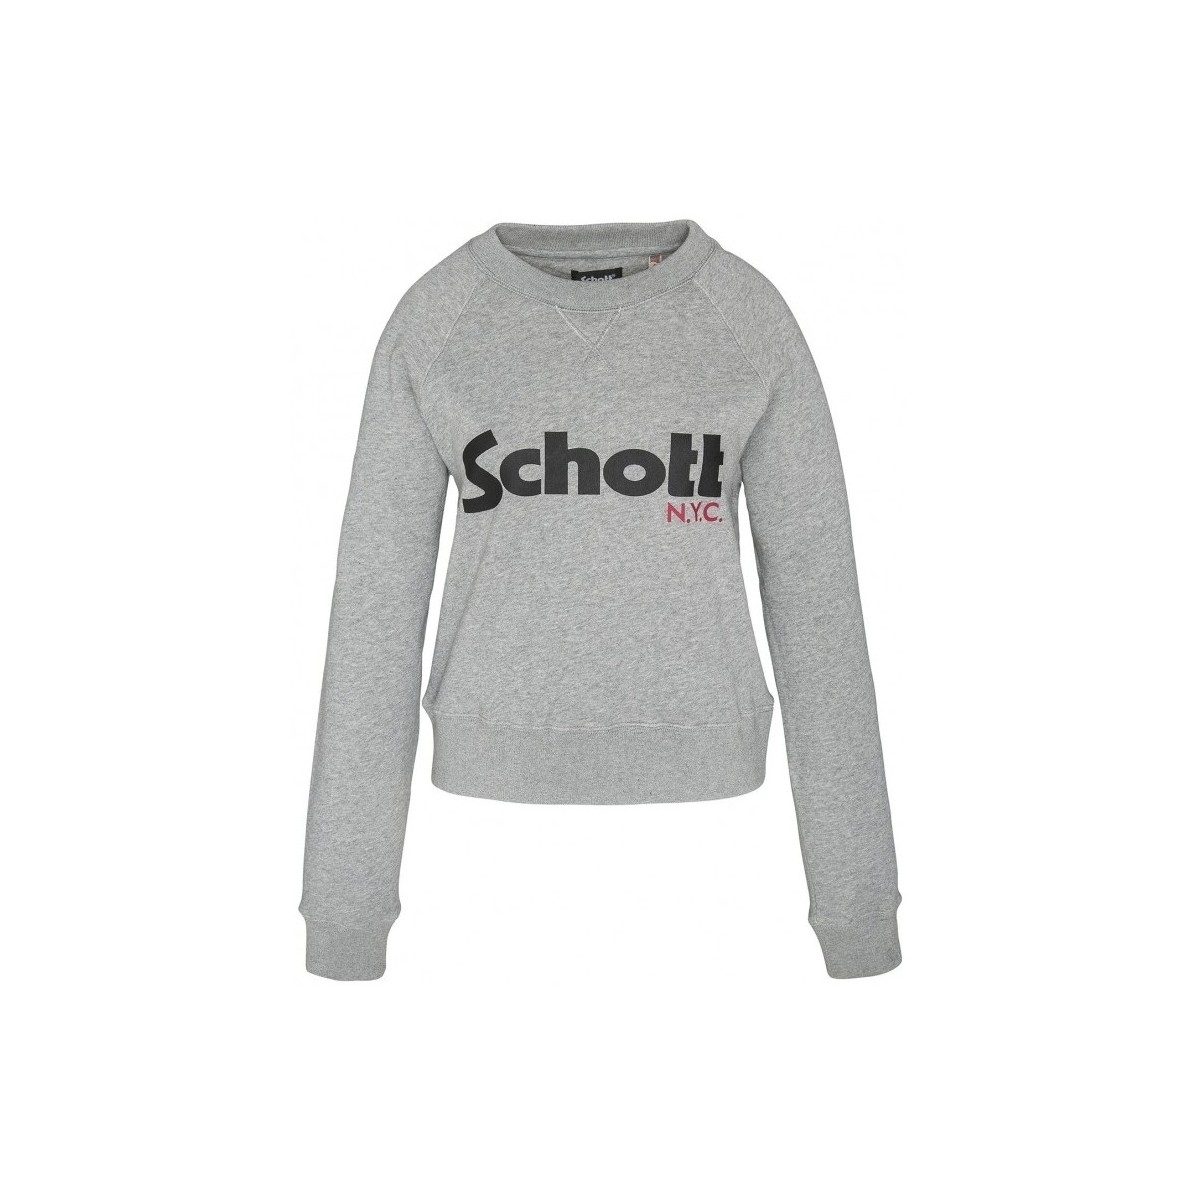 textil Mujer Sudaderas Schott Sweatshirt SW GINGER 1 W HEATHER GREY Gris